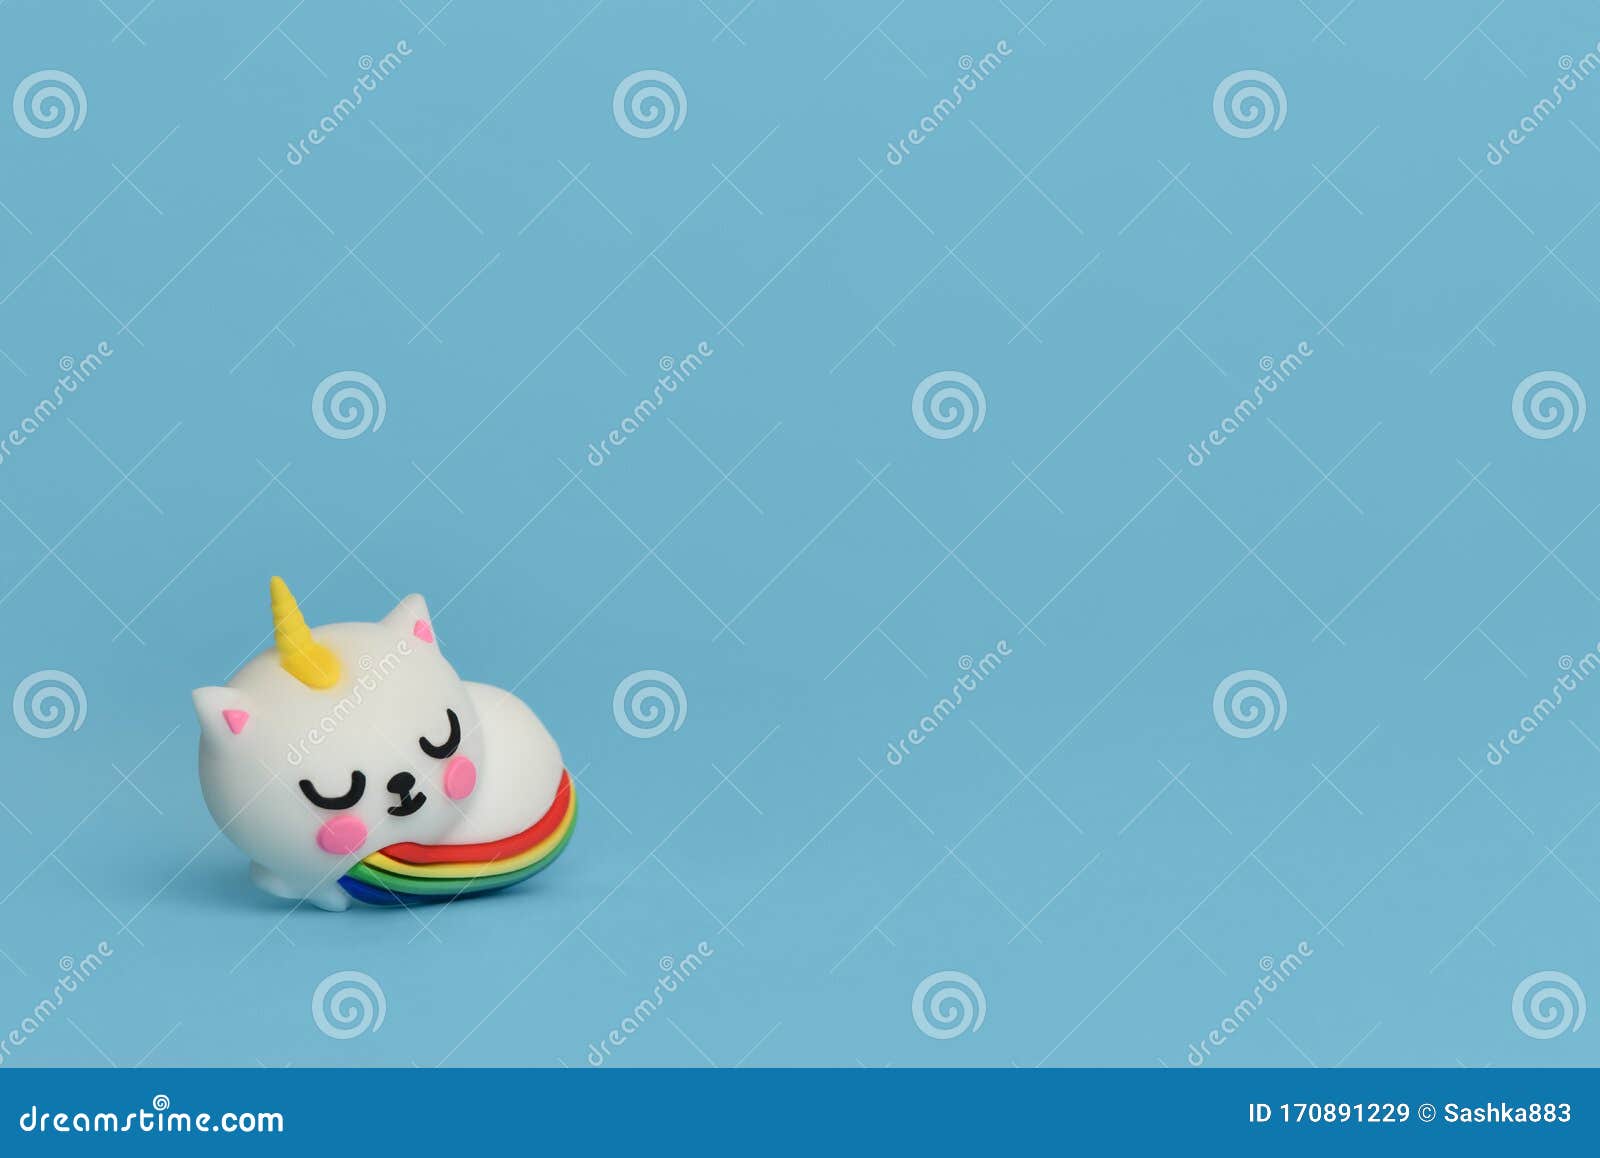 Cat Unicorn Rainbow Tail là một hình ảnh kỳ quặc nhưng cực kỳ đáng yêu với một chú mèo có đuôi cầu vồng unicorn. Chỉ cần nhìn thấy con mèo này, bạn sẽ phát cuồng về những bông tuyết cầu vồng và một chú mèo đáng yêu như thế này sẽ đem lại cho bạn cảm giác vui vẻ và lạc quan!